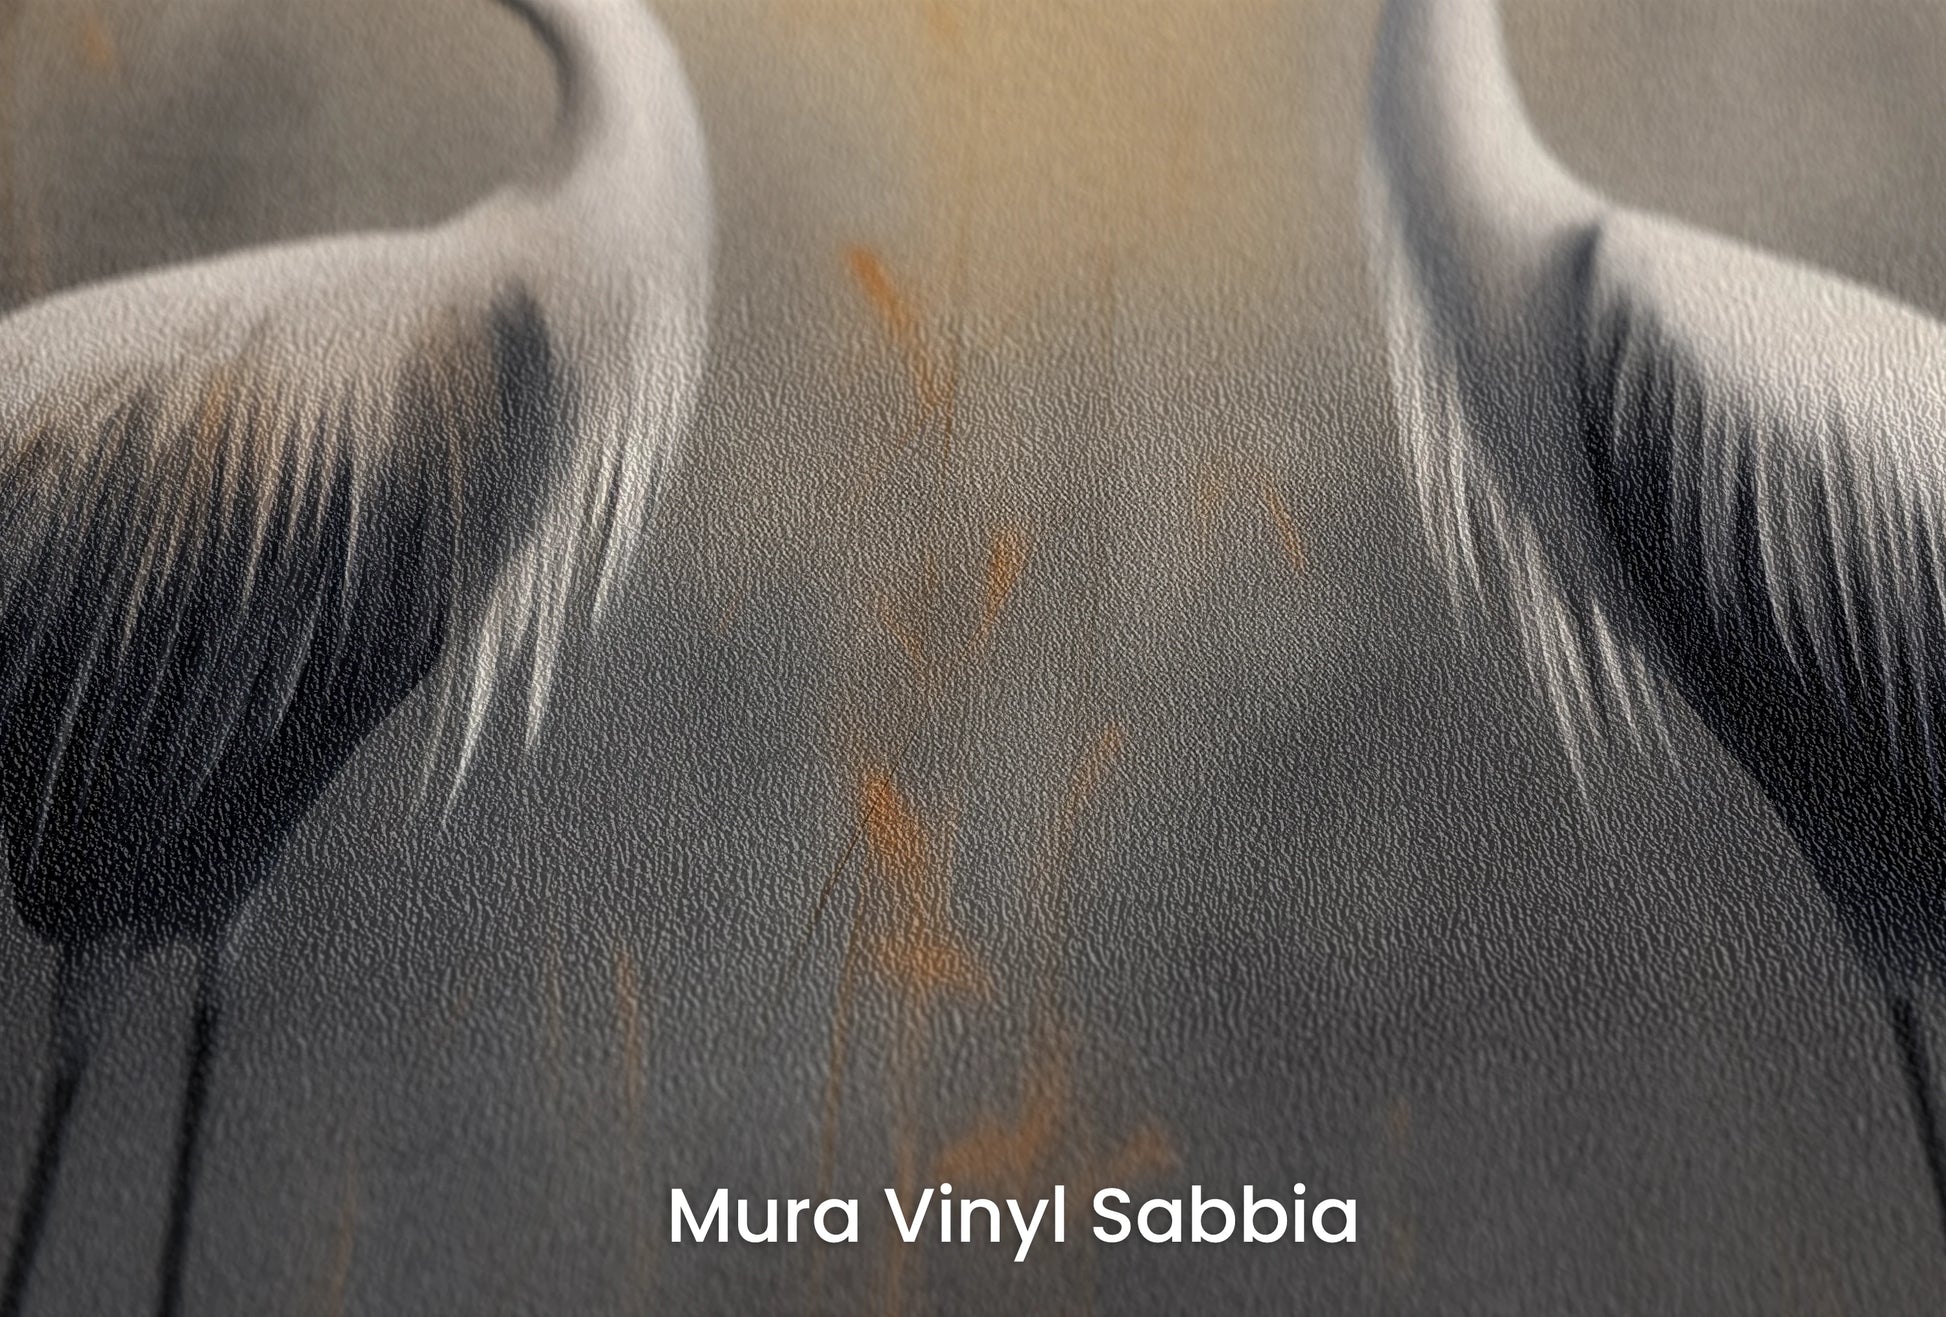 Zbliżenie na artystyczną fototapetę o nazwie Solemn Duet na podłożu Mura Vinyl Sabbia struktura grubego ziarna piasku.